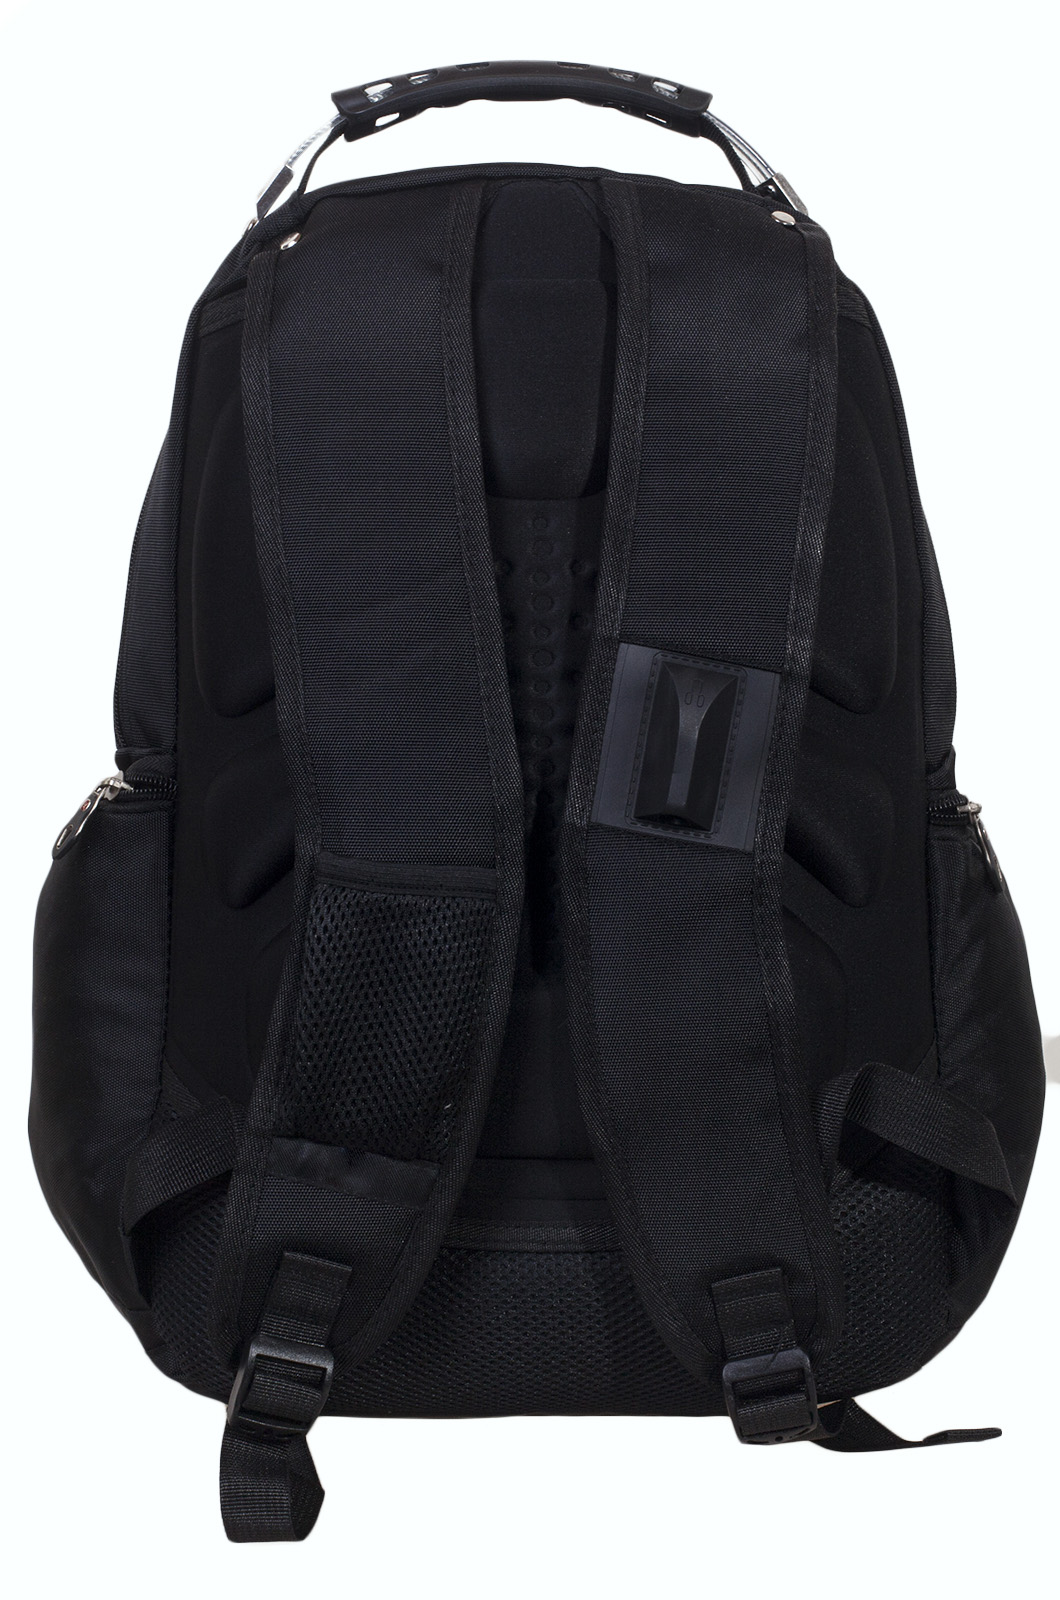 Черный рюкзак с тематической нашивкой Охотничий спецназ купить оптом и в розницу 